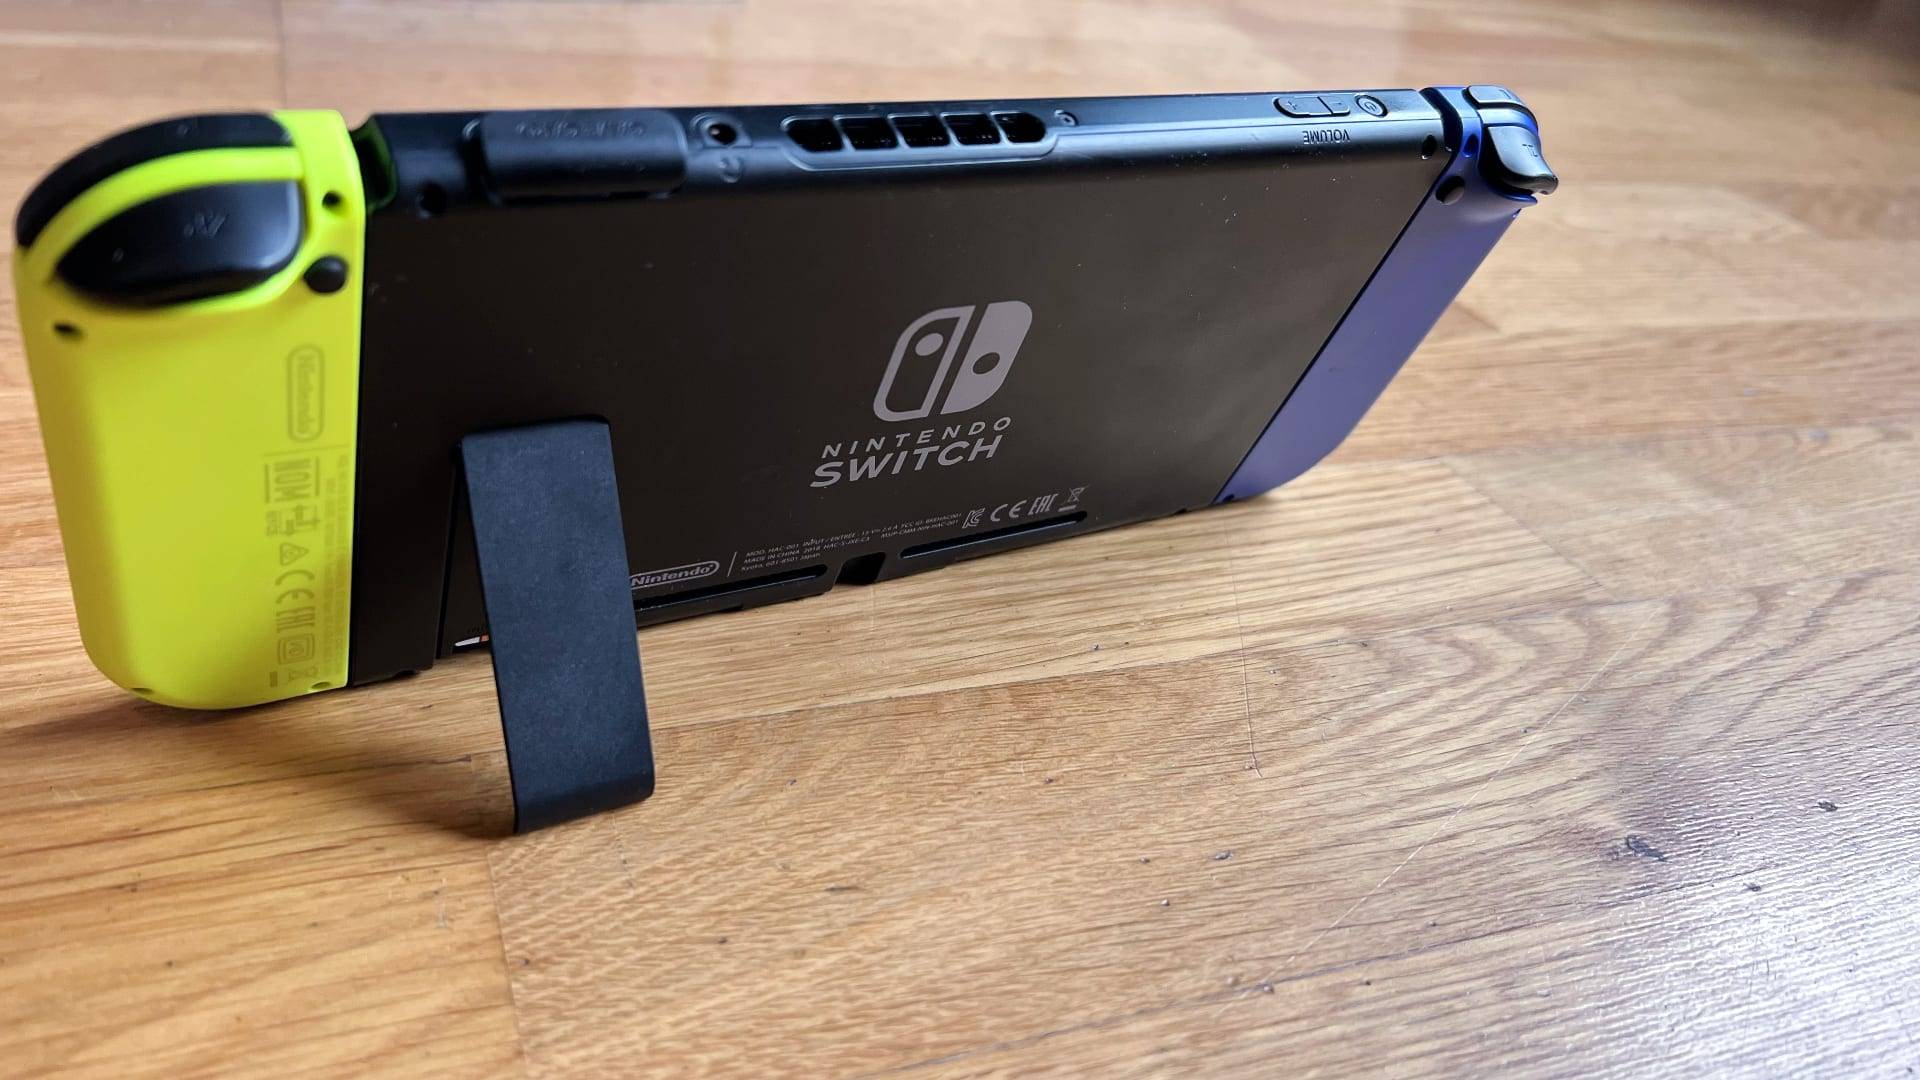 Billede fra test af spillekonsol Nintendo Switch - her med stativet foldet ud